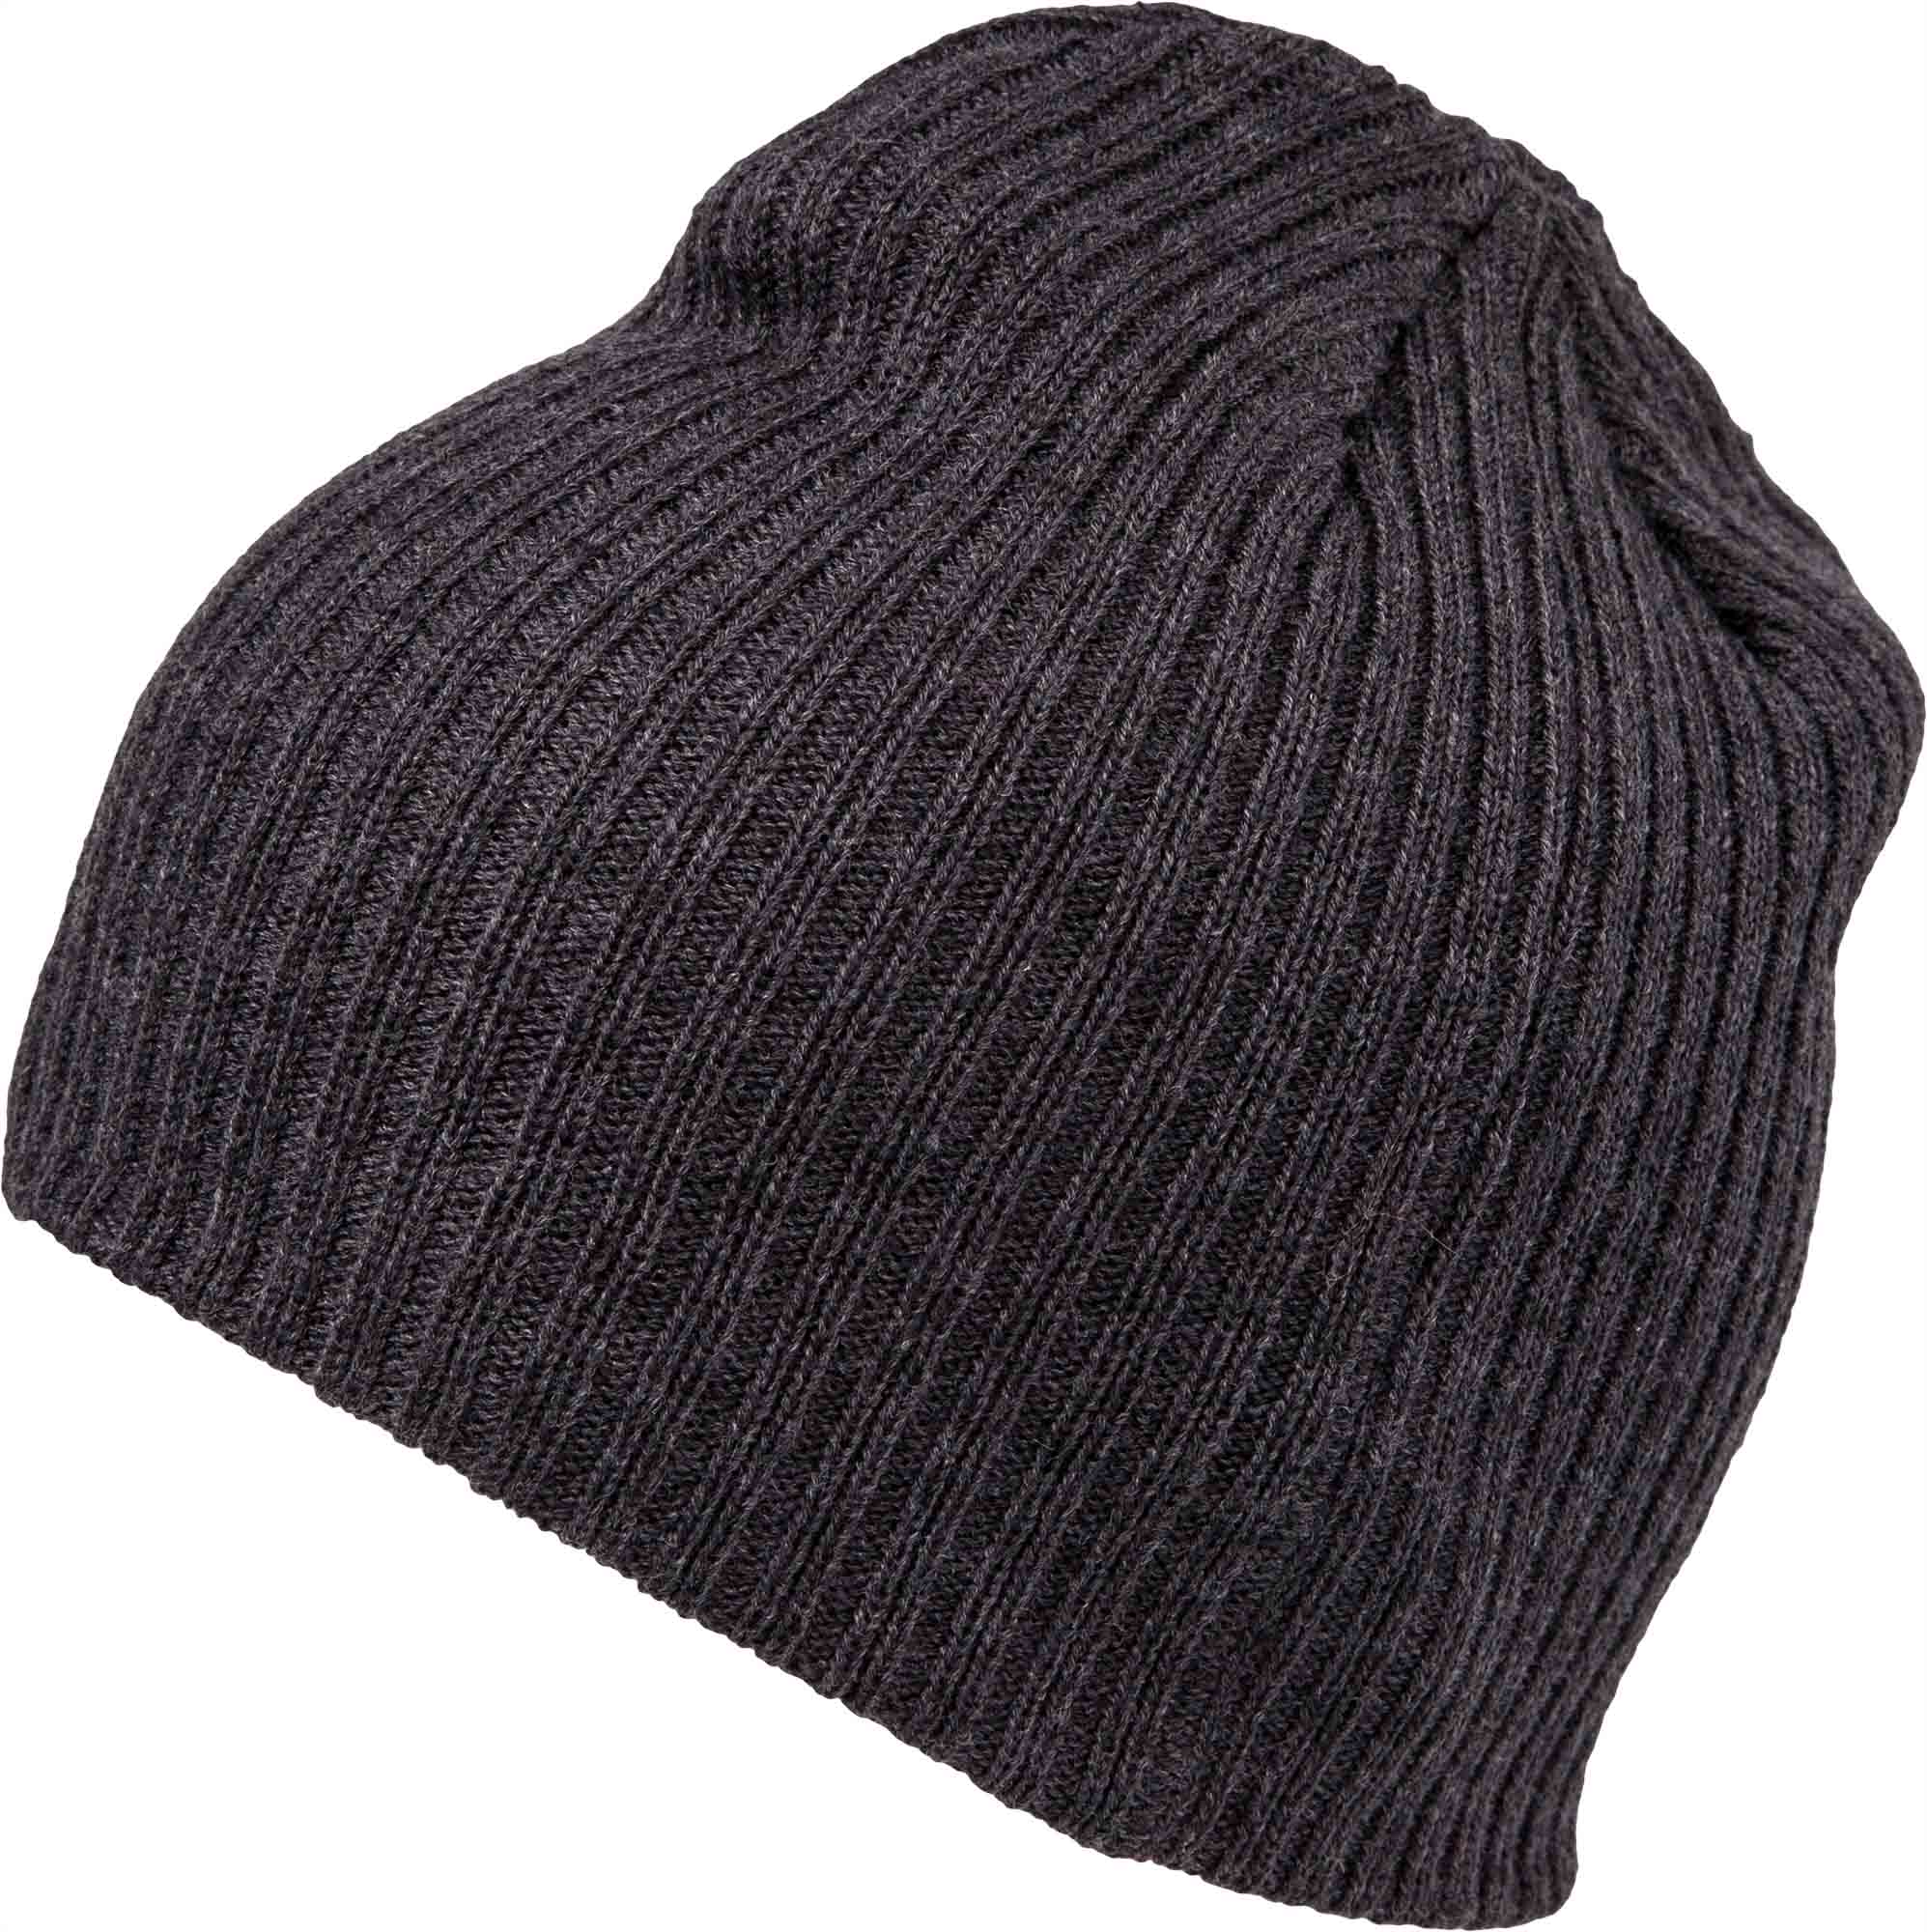 Men’s winter hat